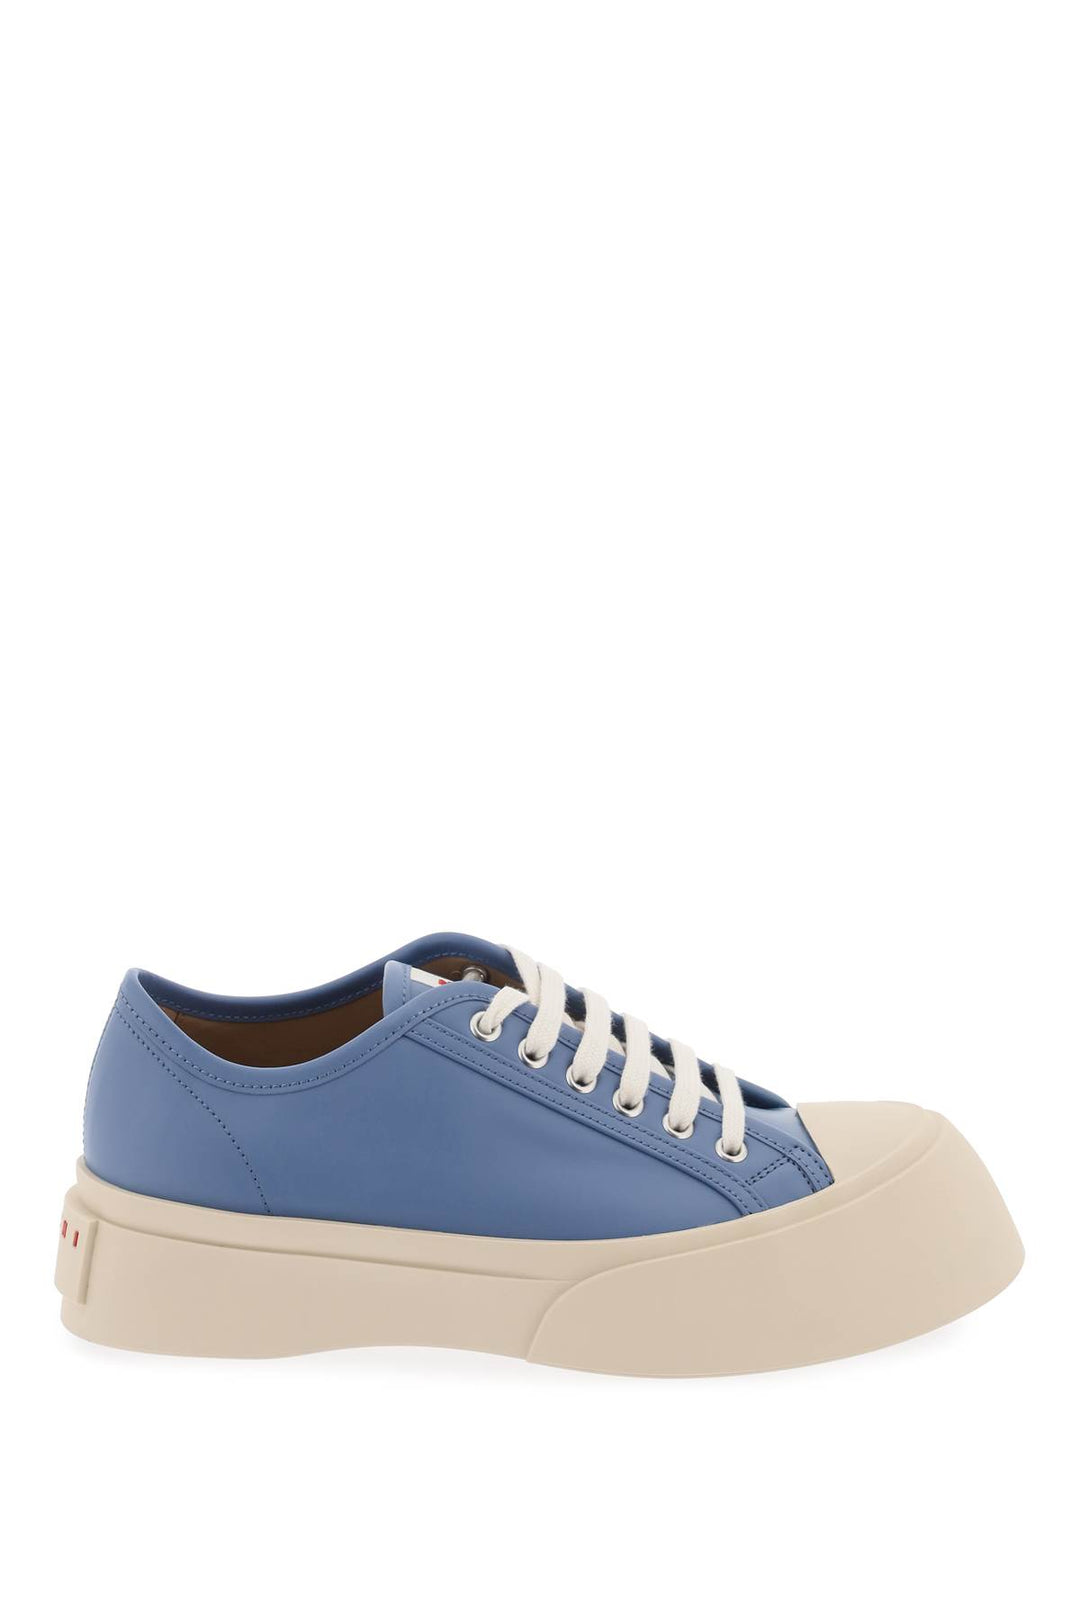 Marni Leather Pablo Sneakers   Blu